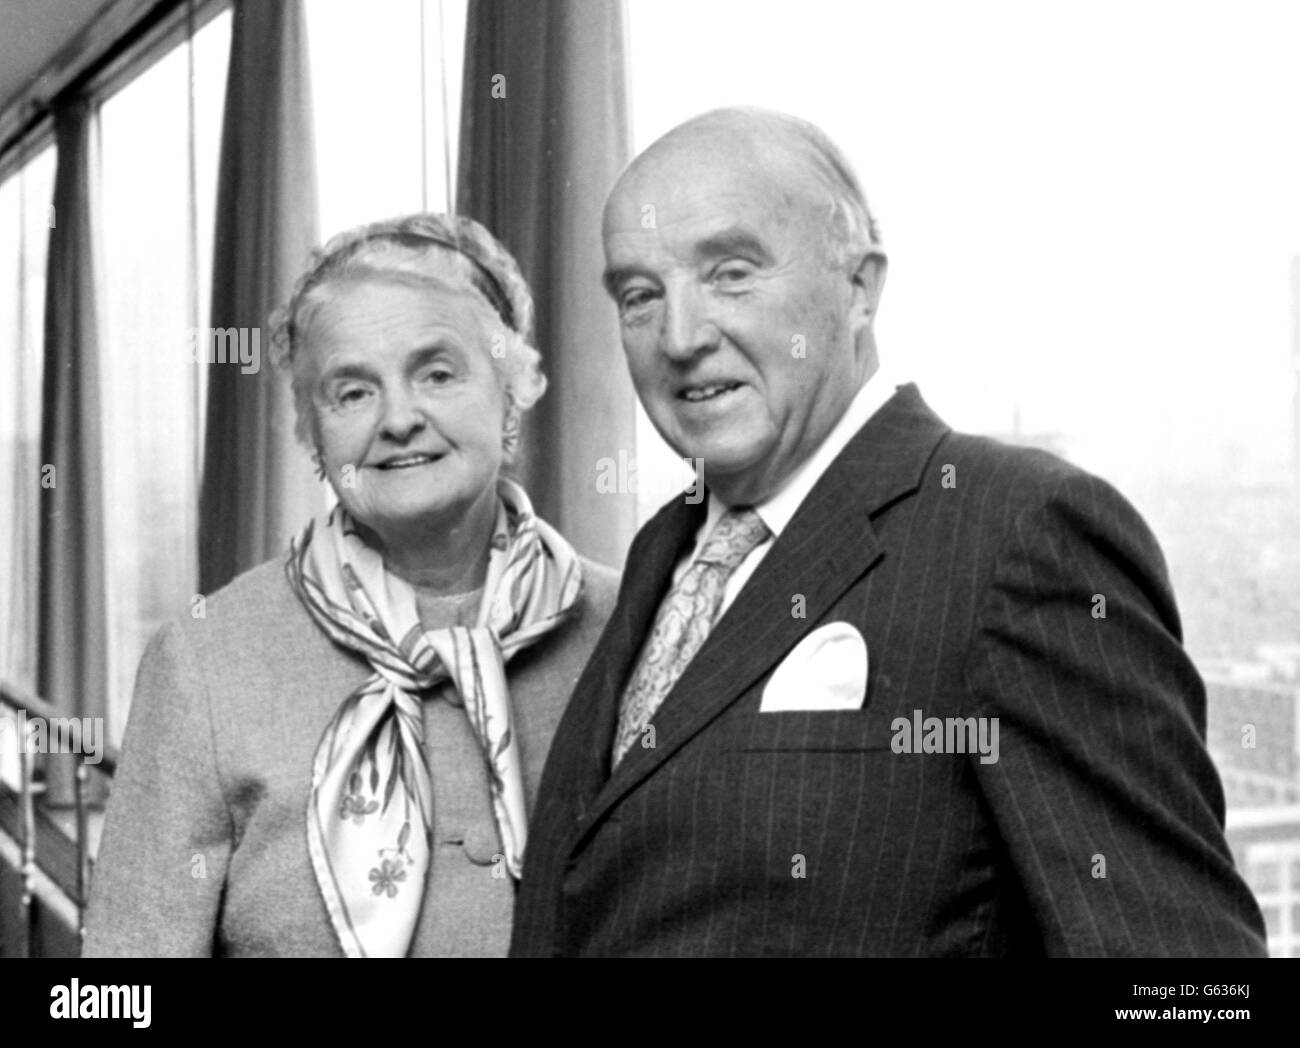 Il professor Charles Best, co-scopritore di insulina nel 1921, ha ritratto con sua moglie ad un ricevimento londinese dato in suo onore dalla British Diabetic Association. Foto Stock